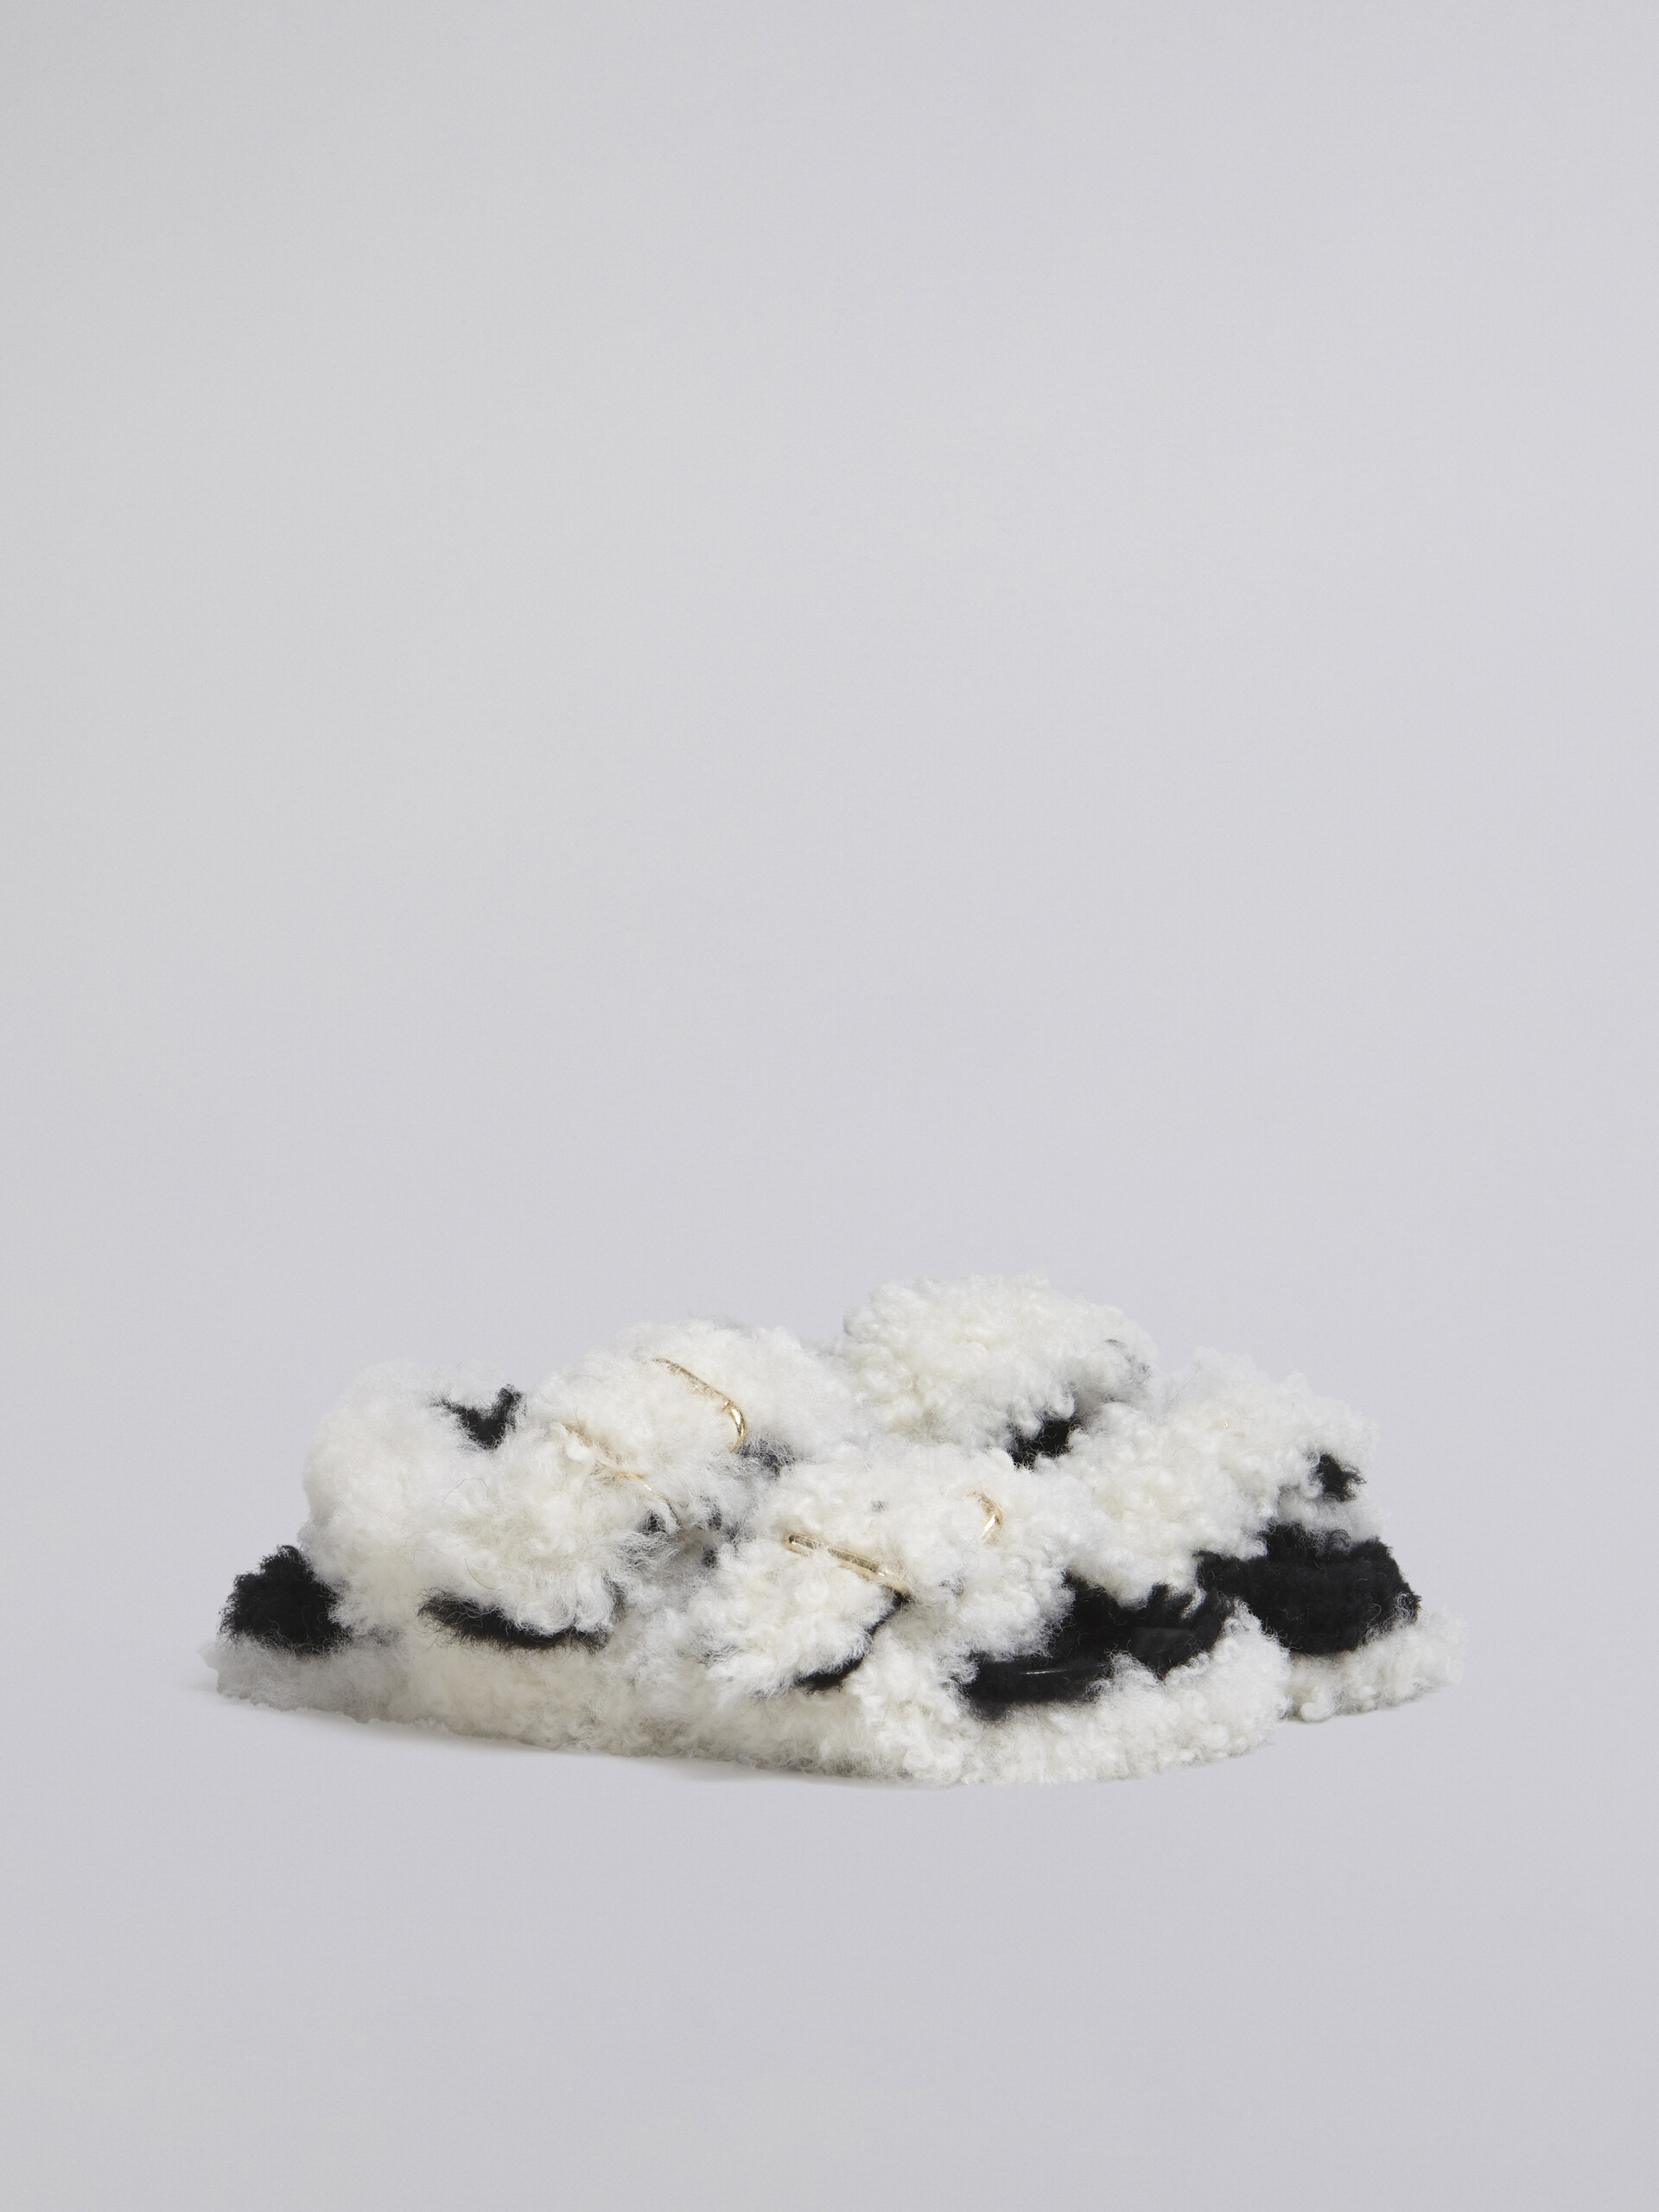 Sandalia Fussbett de borreguito blanco con doble hebilla - Sandalias - Image 2